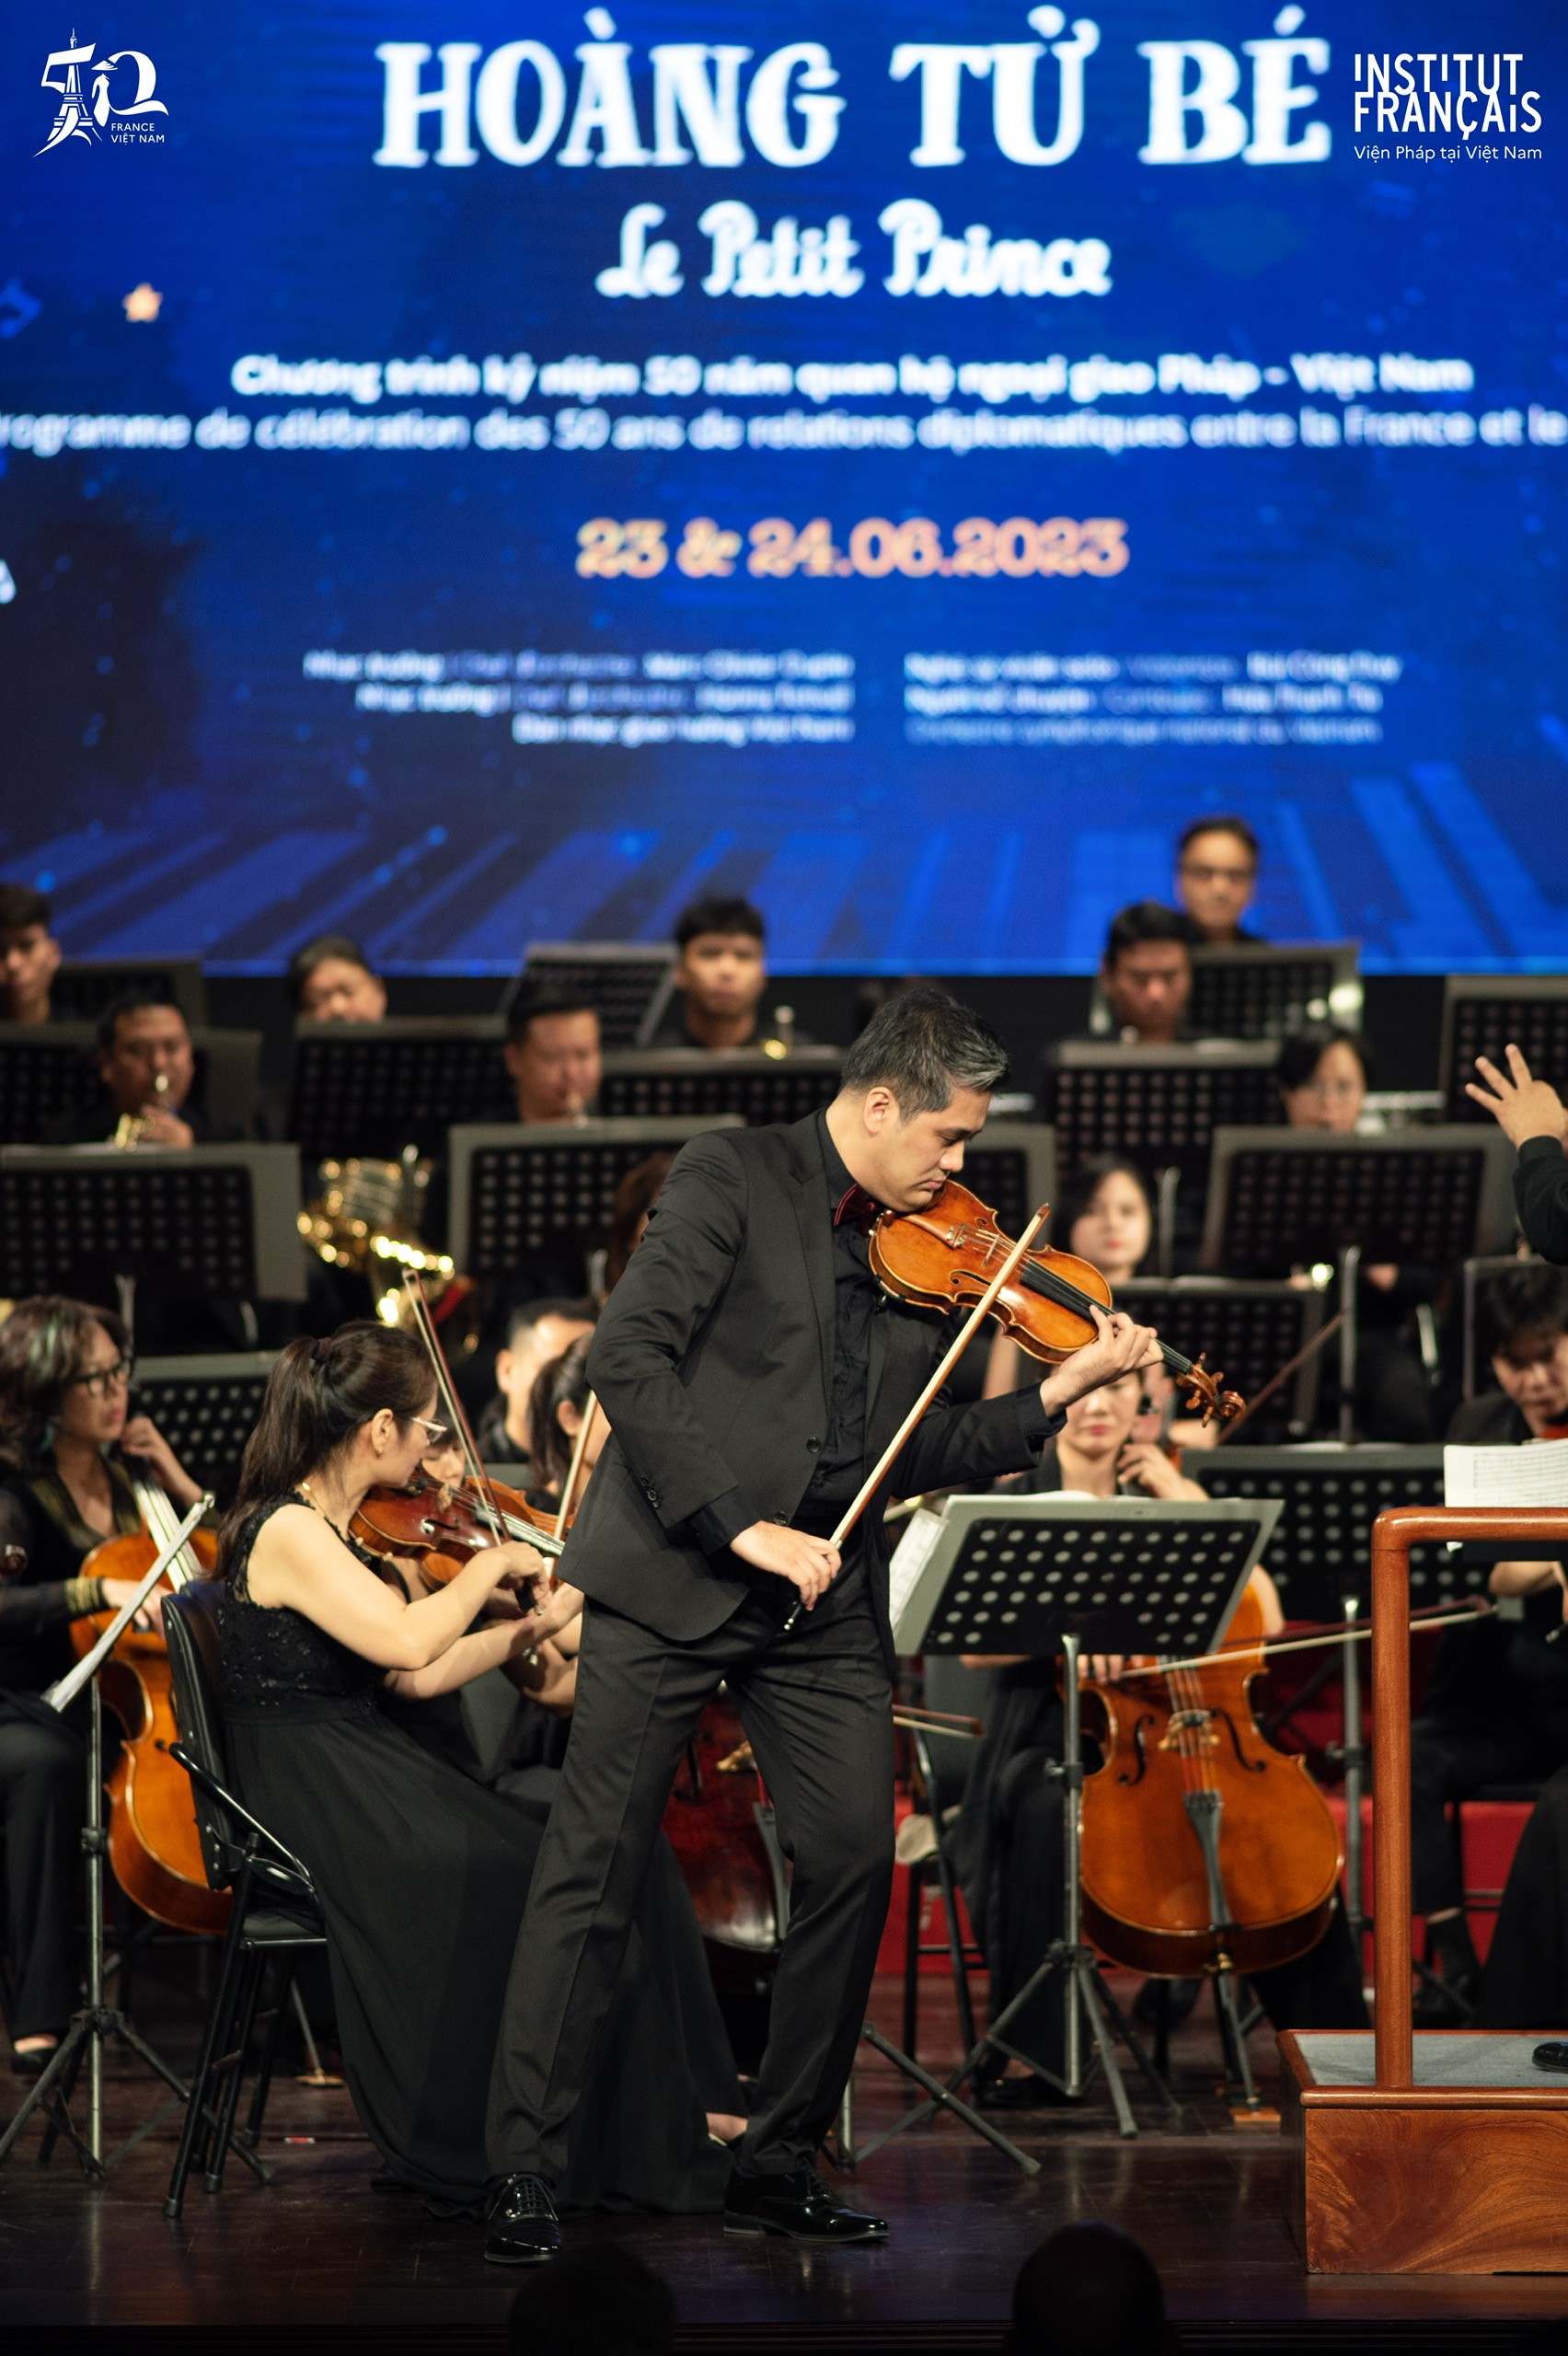  chương trình “Trình diễn âm nhạc Hoàng tử bé” nhân dịp kỷ niệm 50 năm thiết lập quan hệ ngoại giao và 10 năm đối tác chiến lược Việt Nam-Pháp